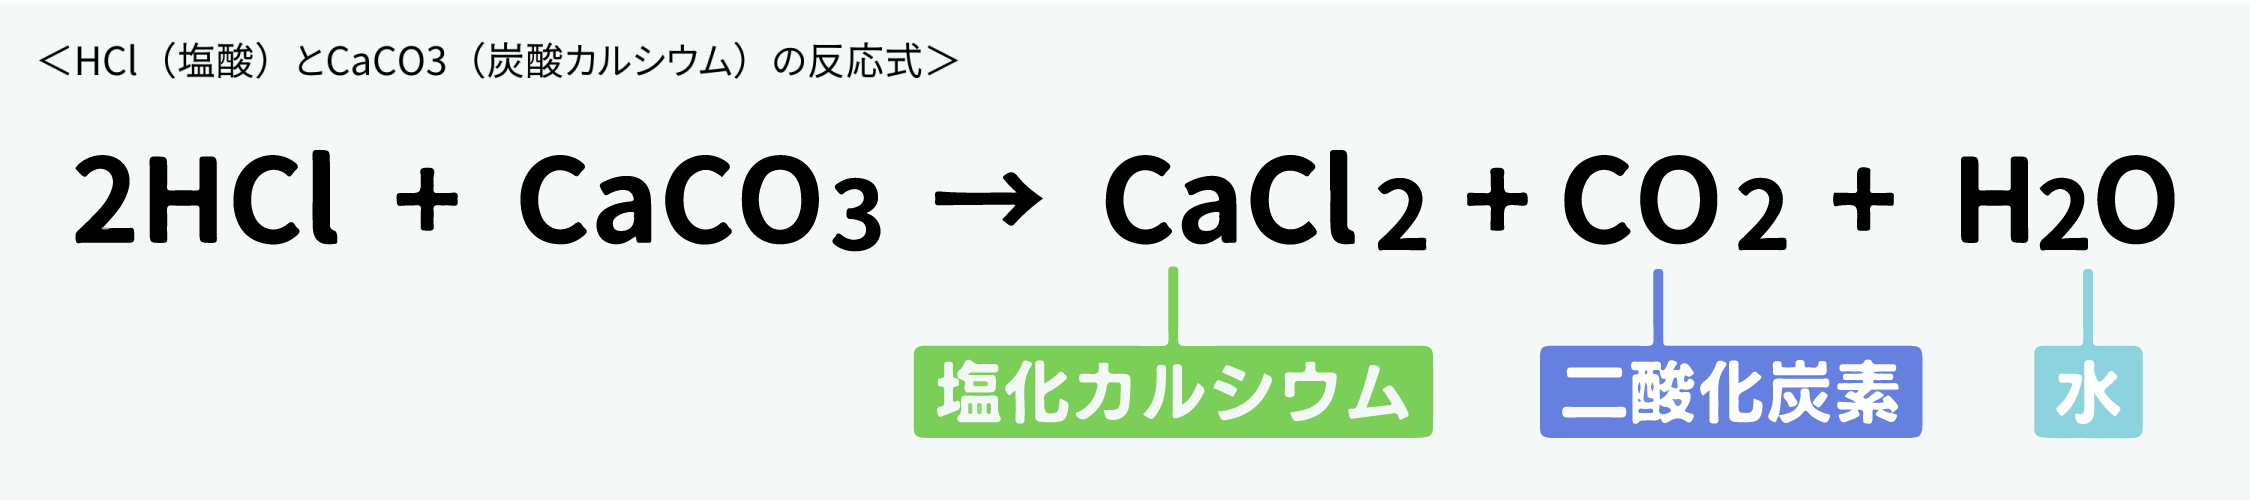 HCl(塩酸)とCaCO3(炭酸カルシウム)の反応式